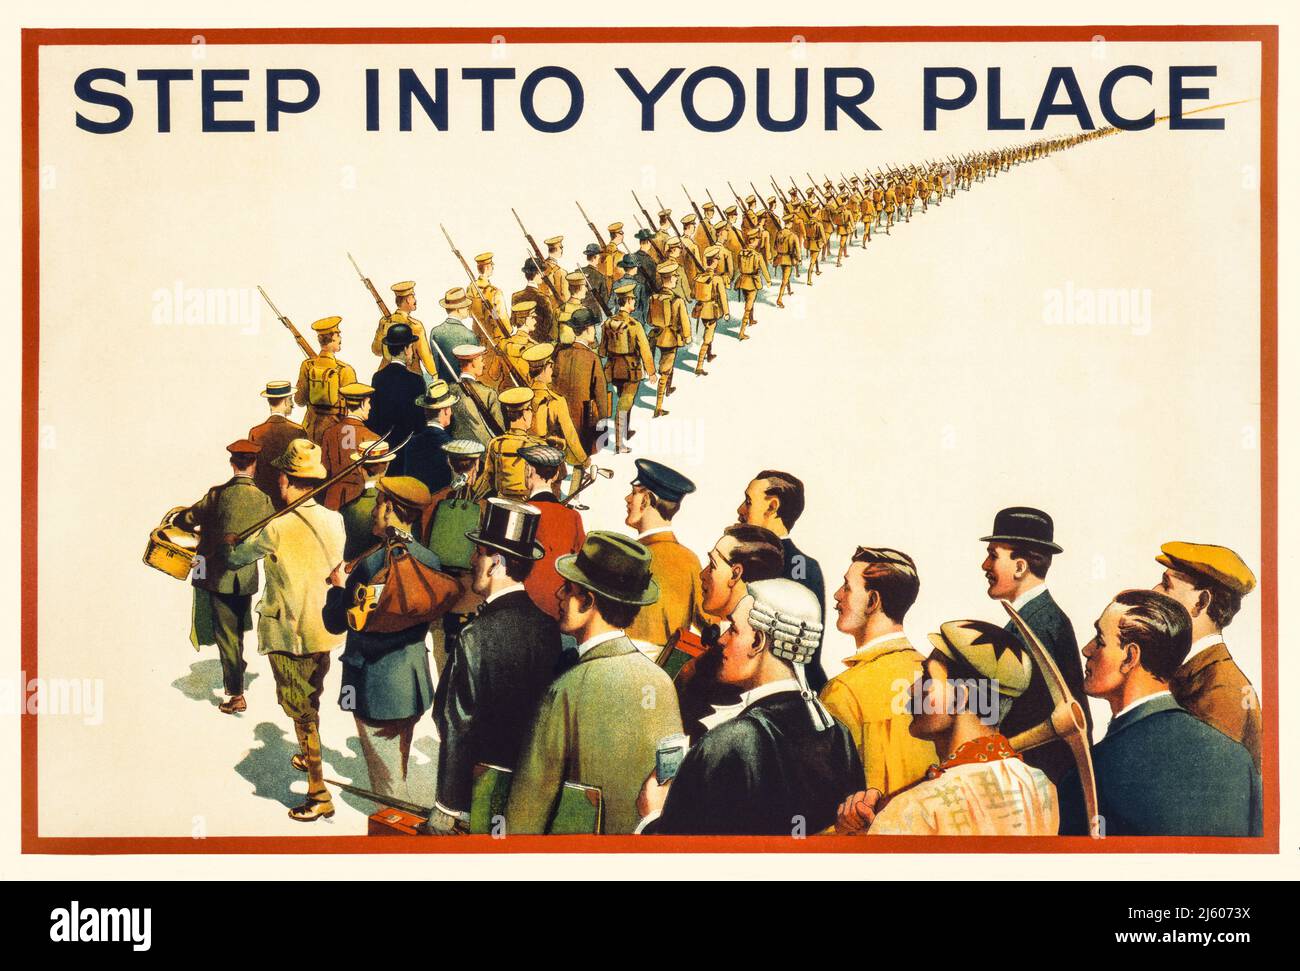 Ein britisches Werbeplakat aus dem Jahr 1915, auf dem eine in die Ferne marschierende Soldatensäule zu sehen ist, während im Vordergrund eine Vielzahl von Männern in ziviler Kleidung zusammenkommt. Künstler Unbekannt. Stockfoto